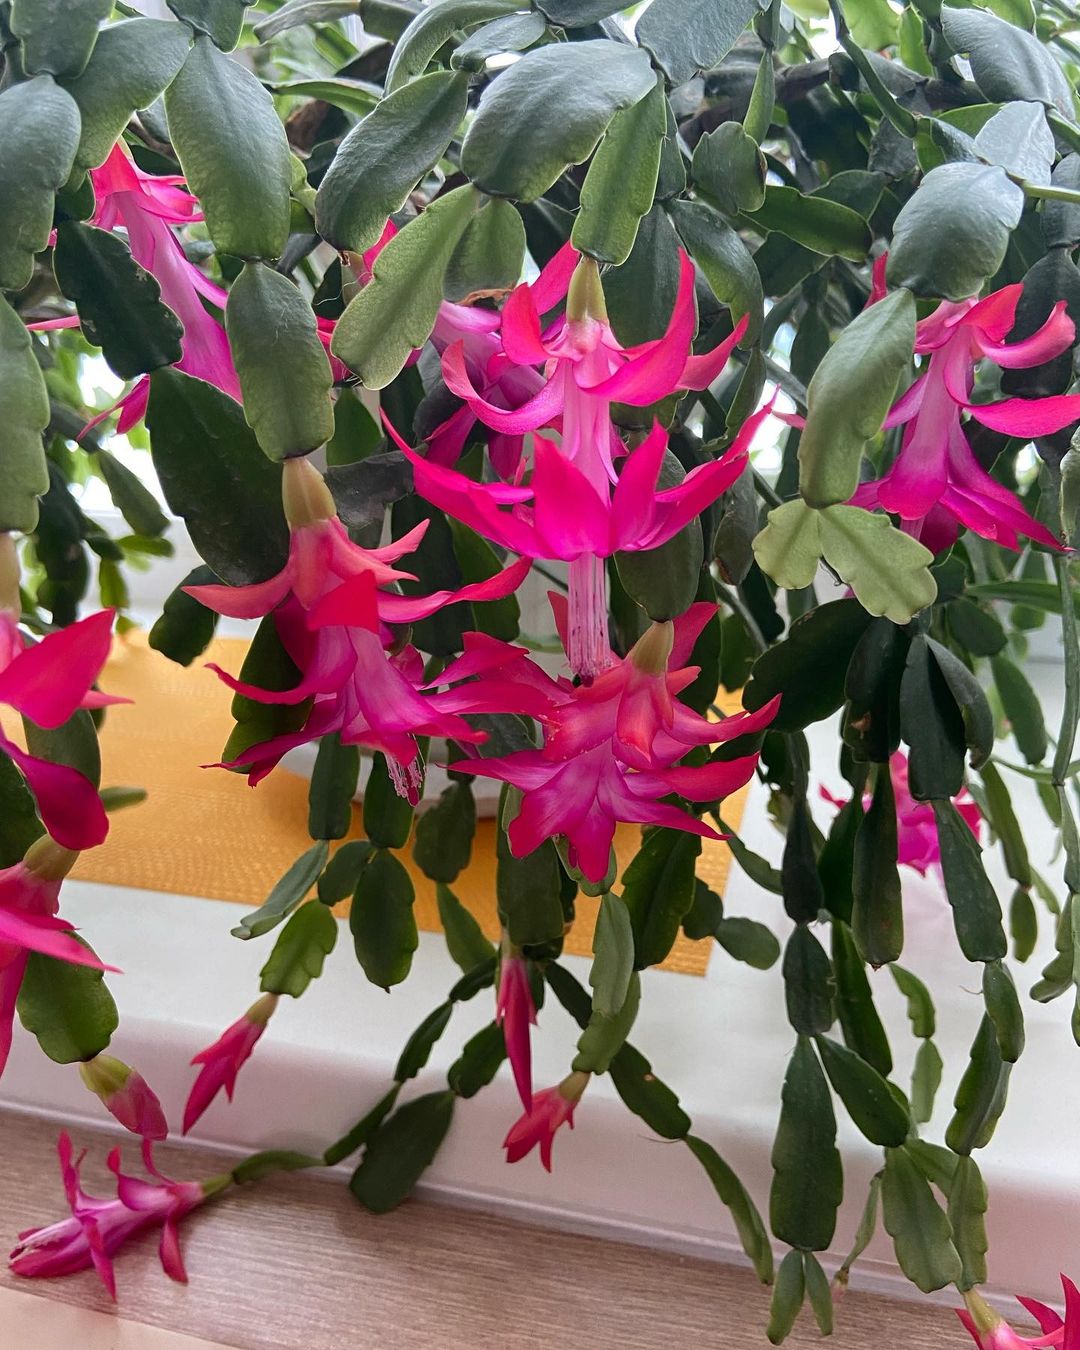 6 комнатных растений, которые вы можете разместить в ванной комнате - 3. Фаленопсис Орхидея